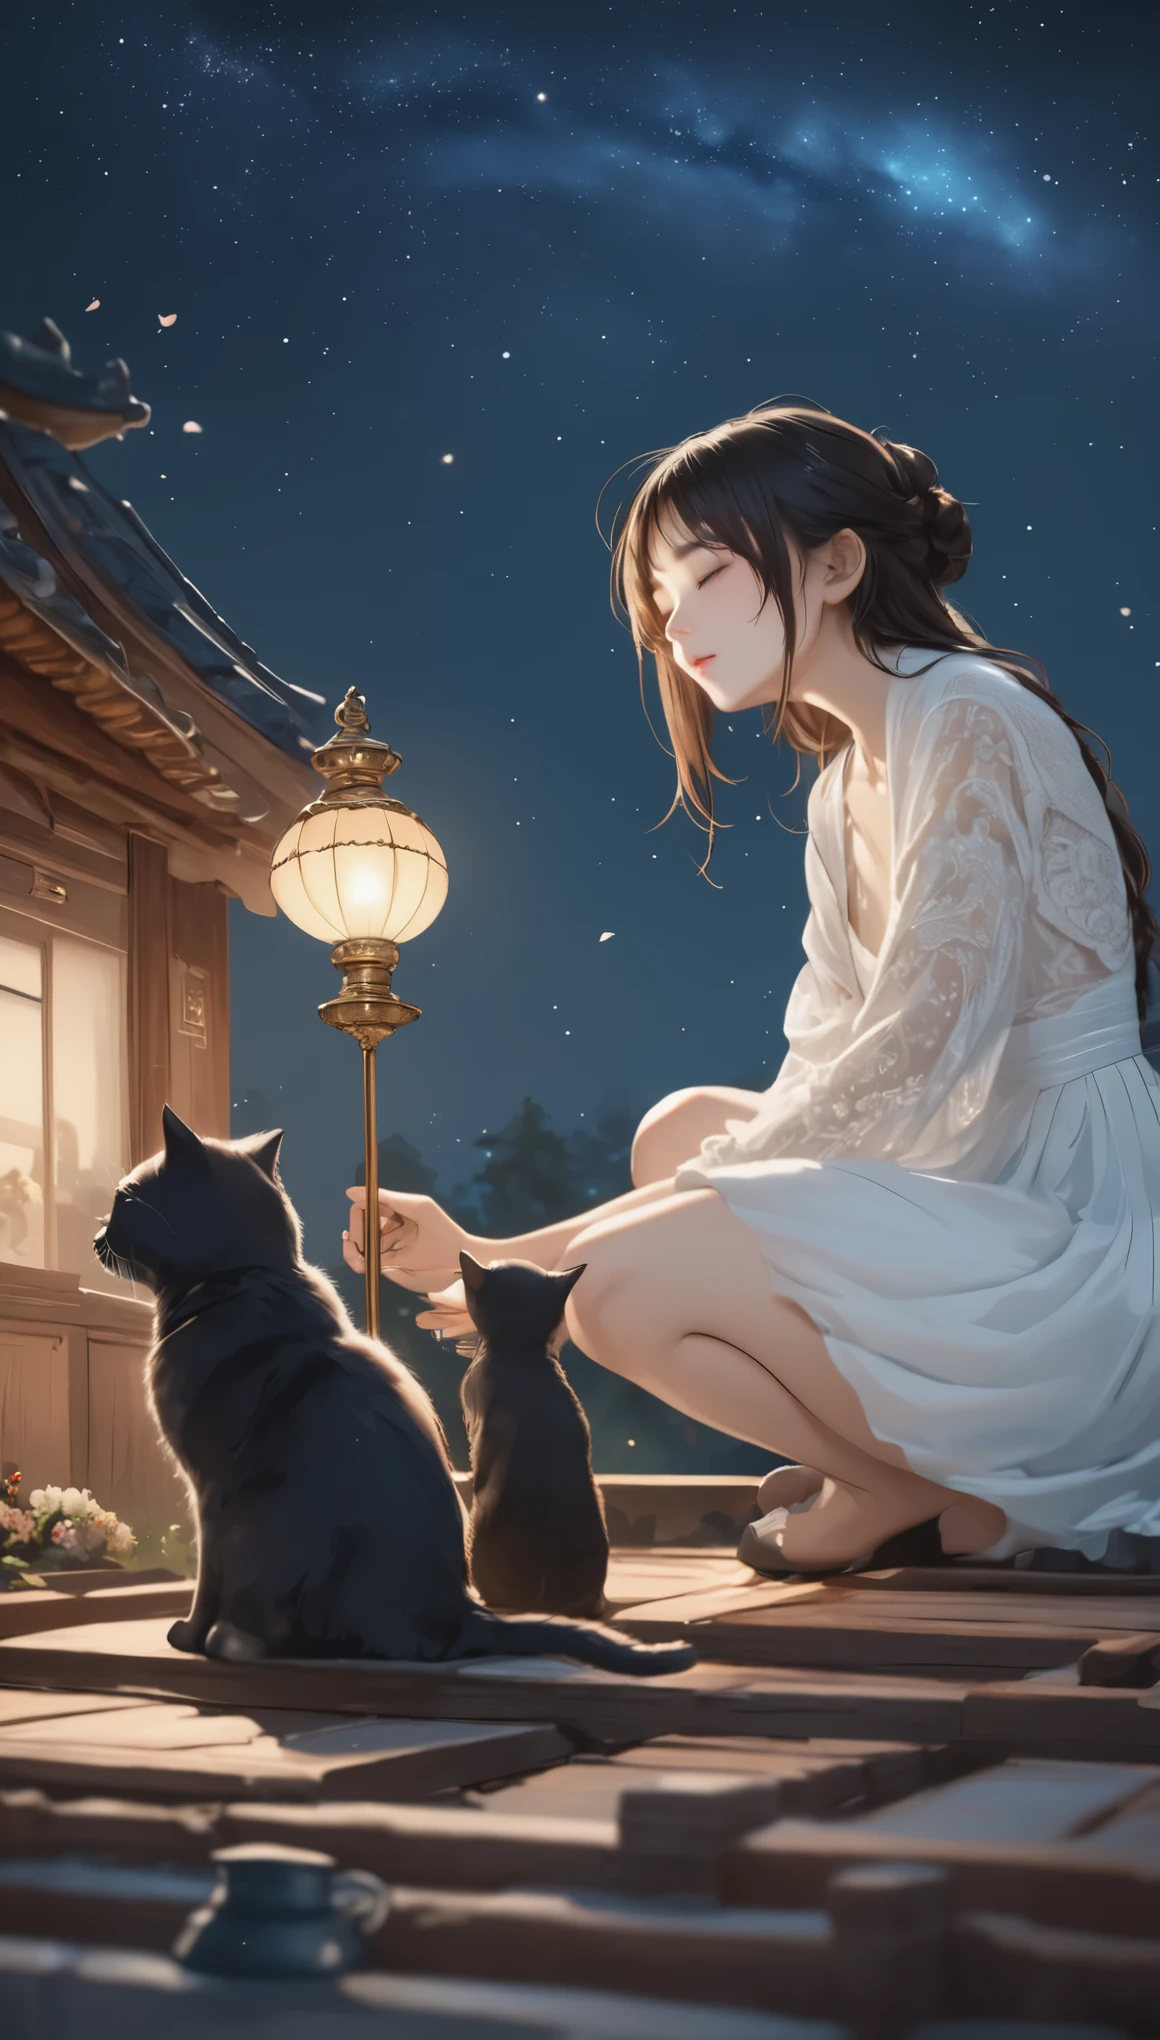 在星空下許願, 夜空如墨, 星星散落. 一個女孩和一隻黑貓坐在屋頂上, 旁邊有一盞小燈. 女孩閉上眼睛許願., 貓發出了難以理解的聲音., 彷彿在默默地祝福她, (傑作, 最好的品質, 專業的, 完美的構圖, 如此美麗, 荒誕, 超詳細, 複雜的細節:1.3)